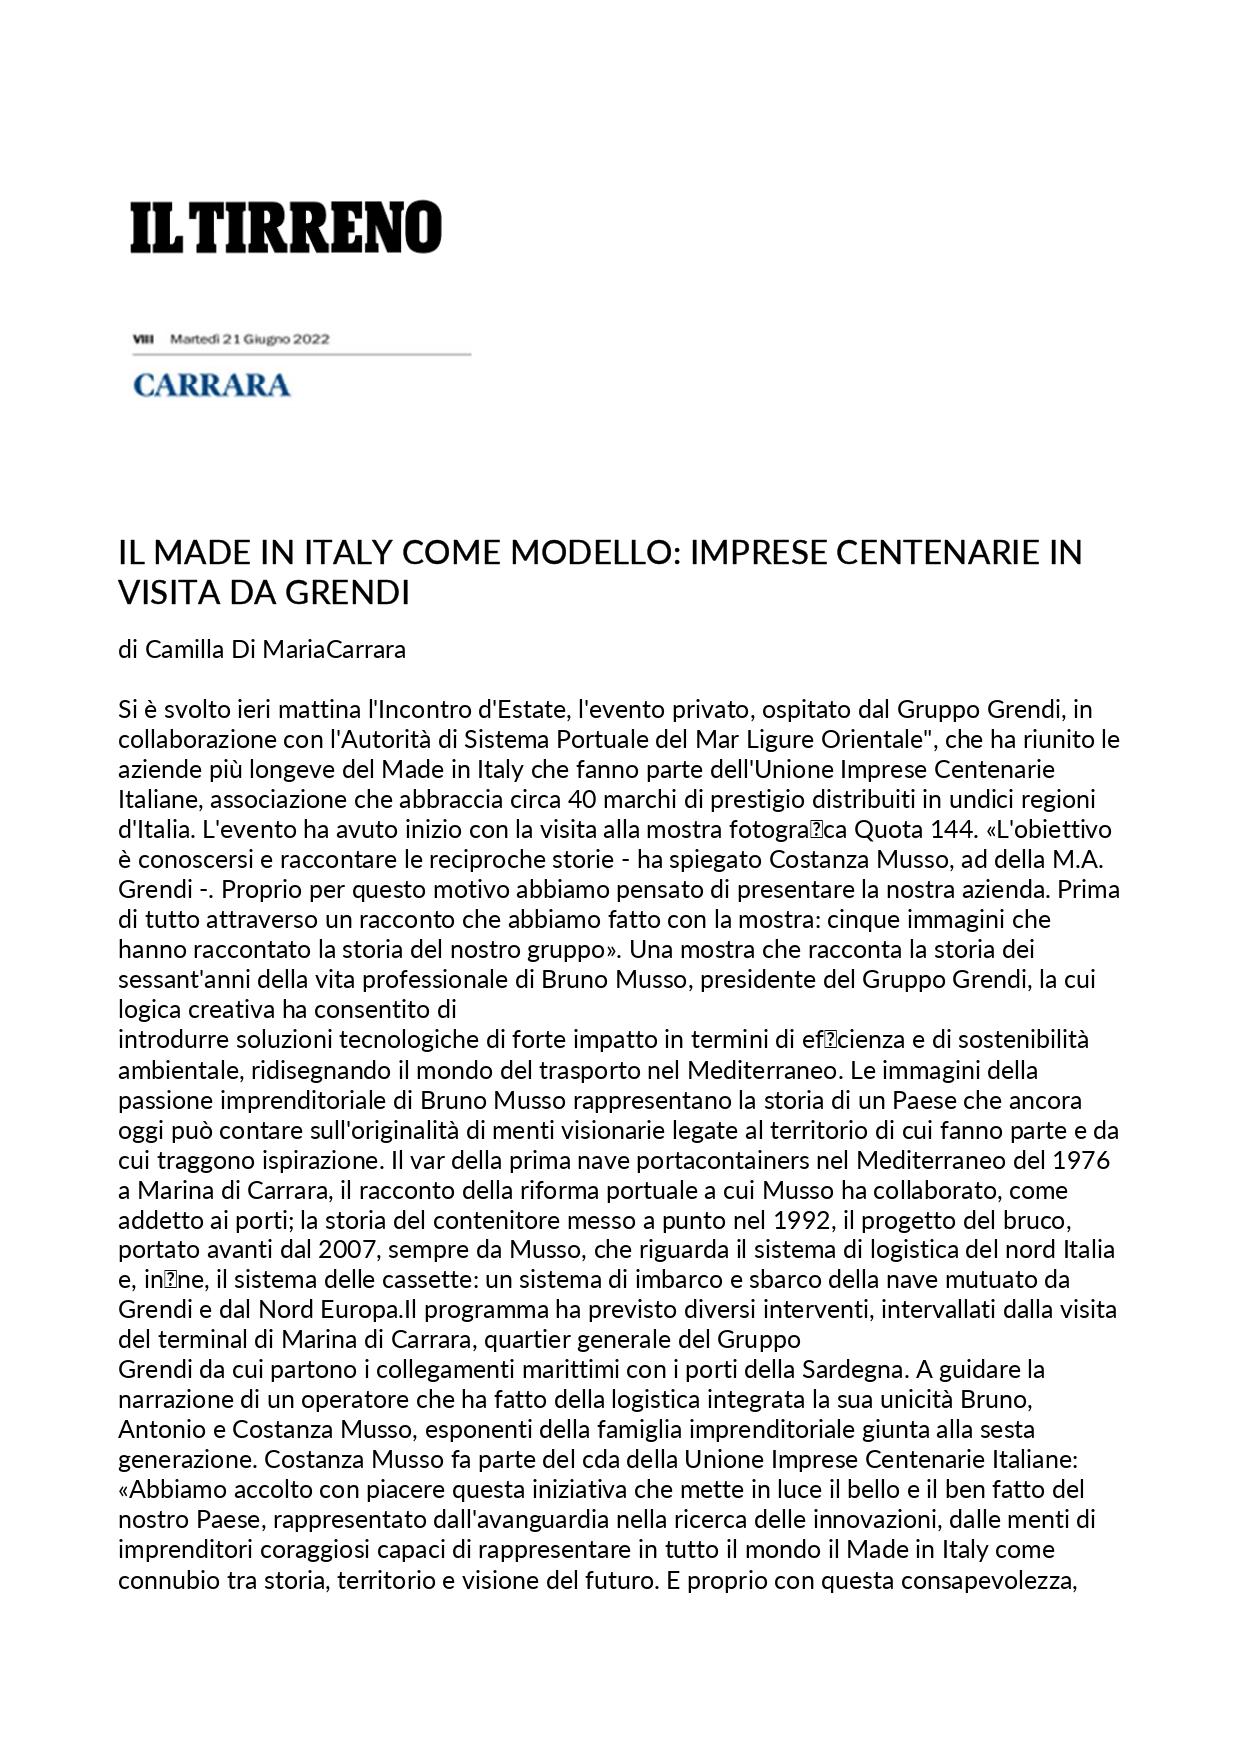 Il Tirreno Il Made in Italy come modello imprese centenarie in visita da Grendi 21 giugno 2022 page 0001